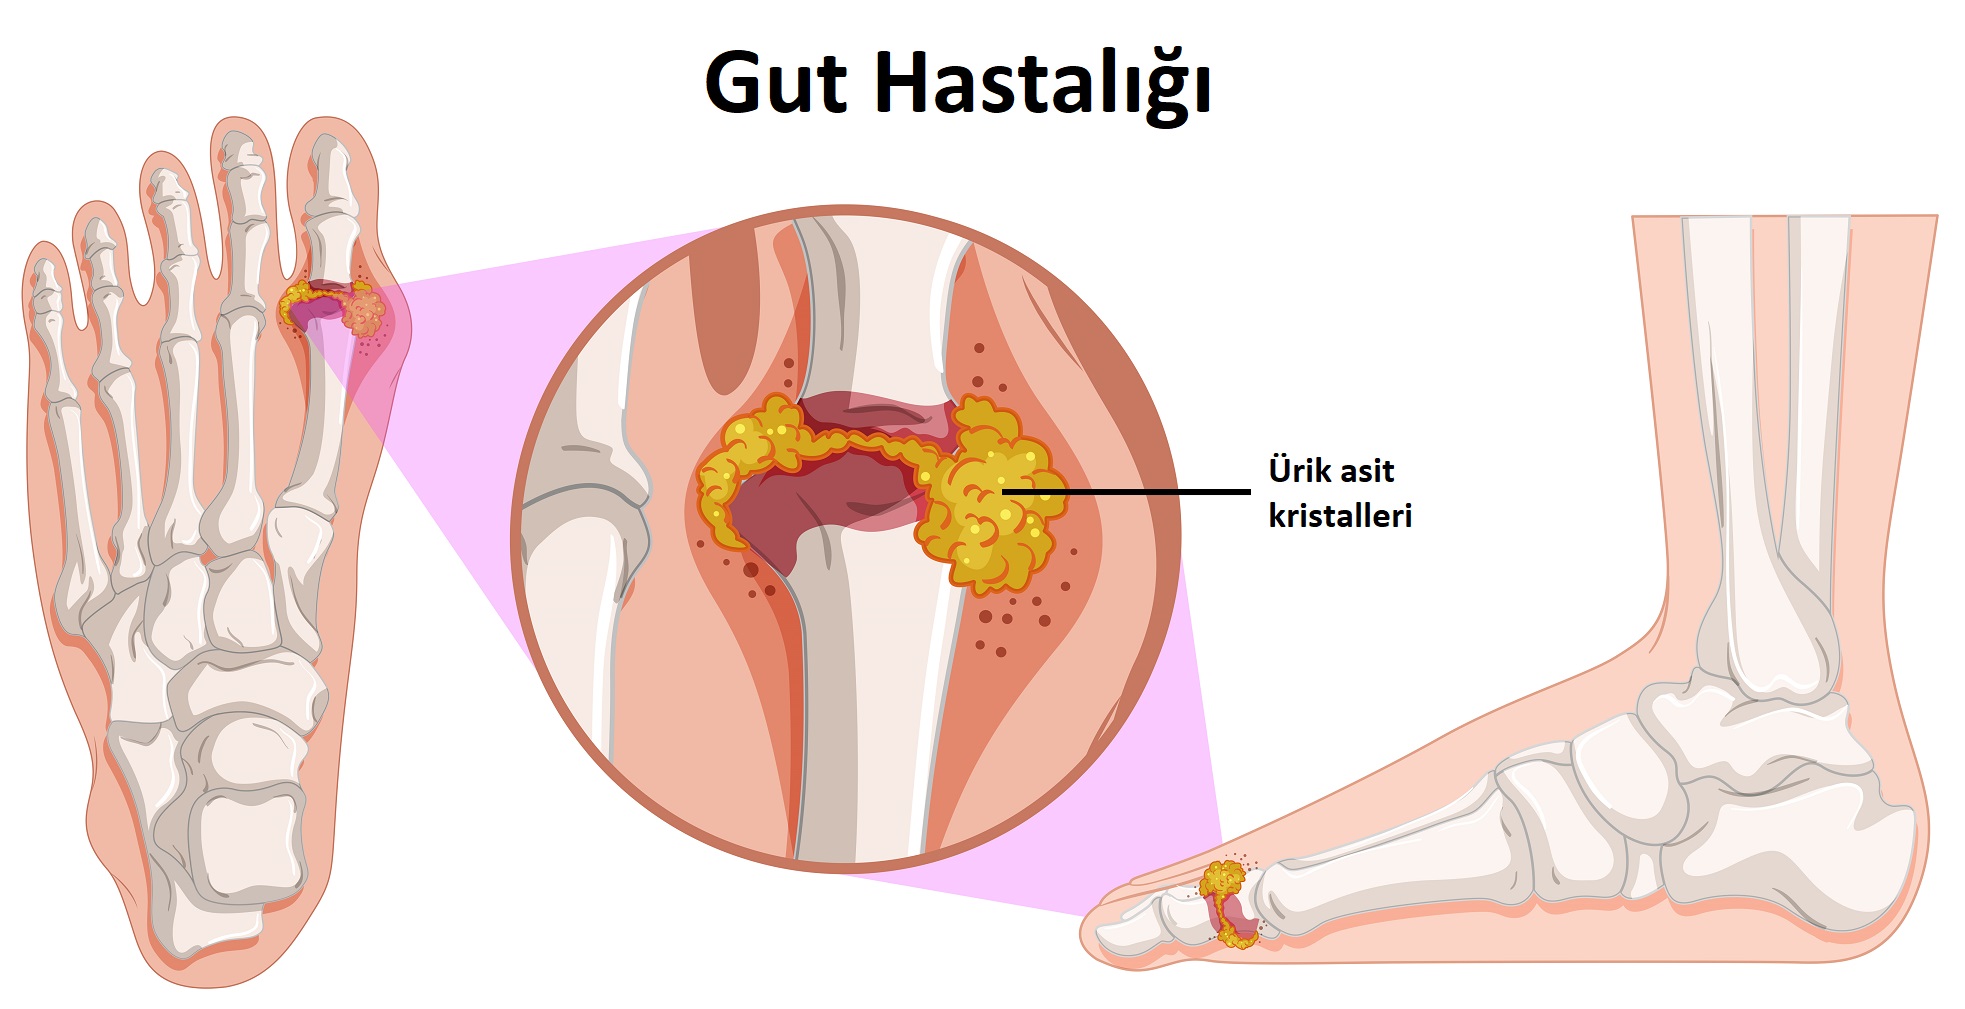 Gut Hastalığı Tedavisi - Hürrem Sultan Hastanesi